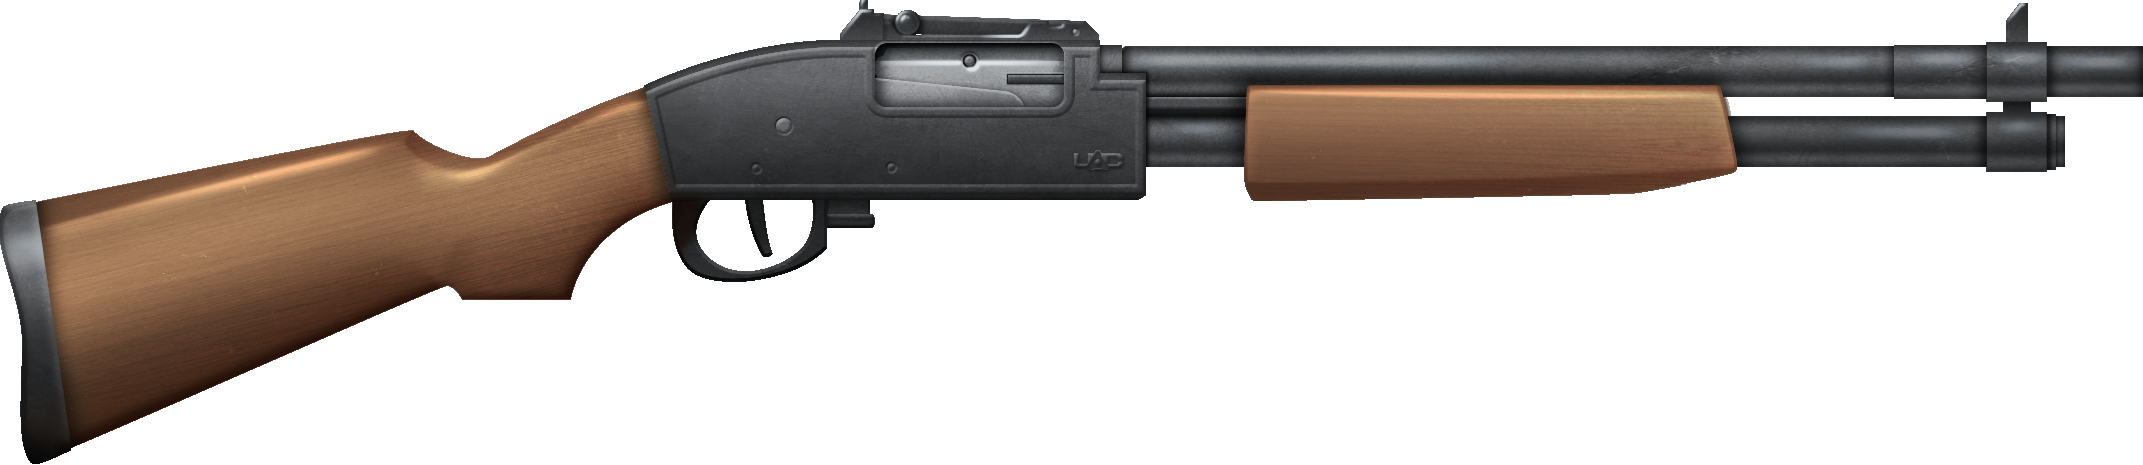 Shotgun PNG Clip Art HD Quality